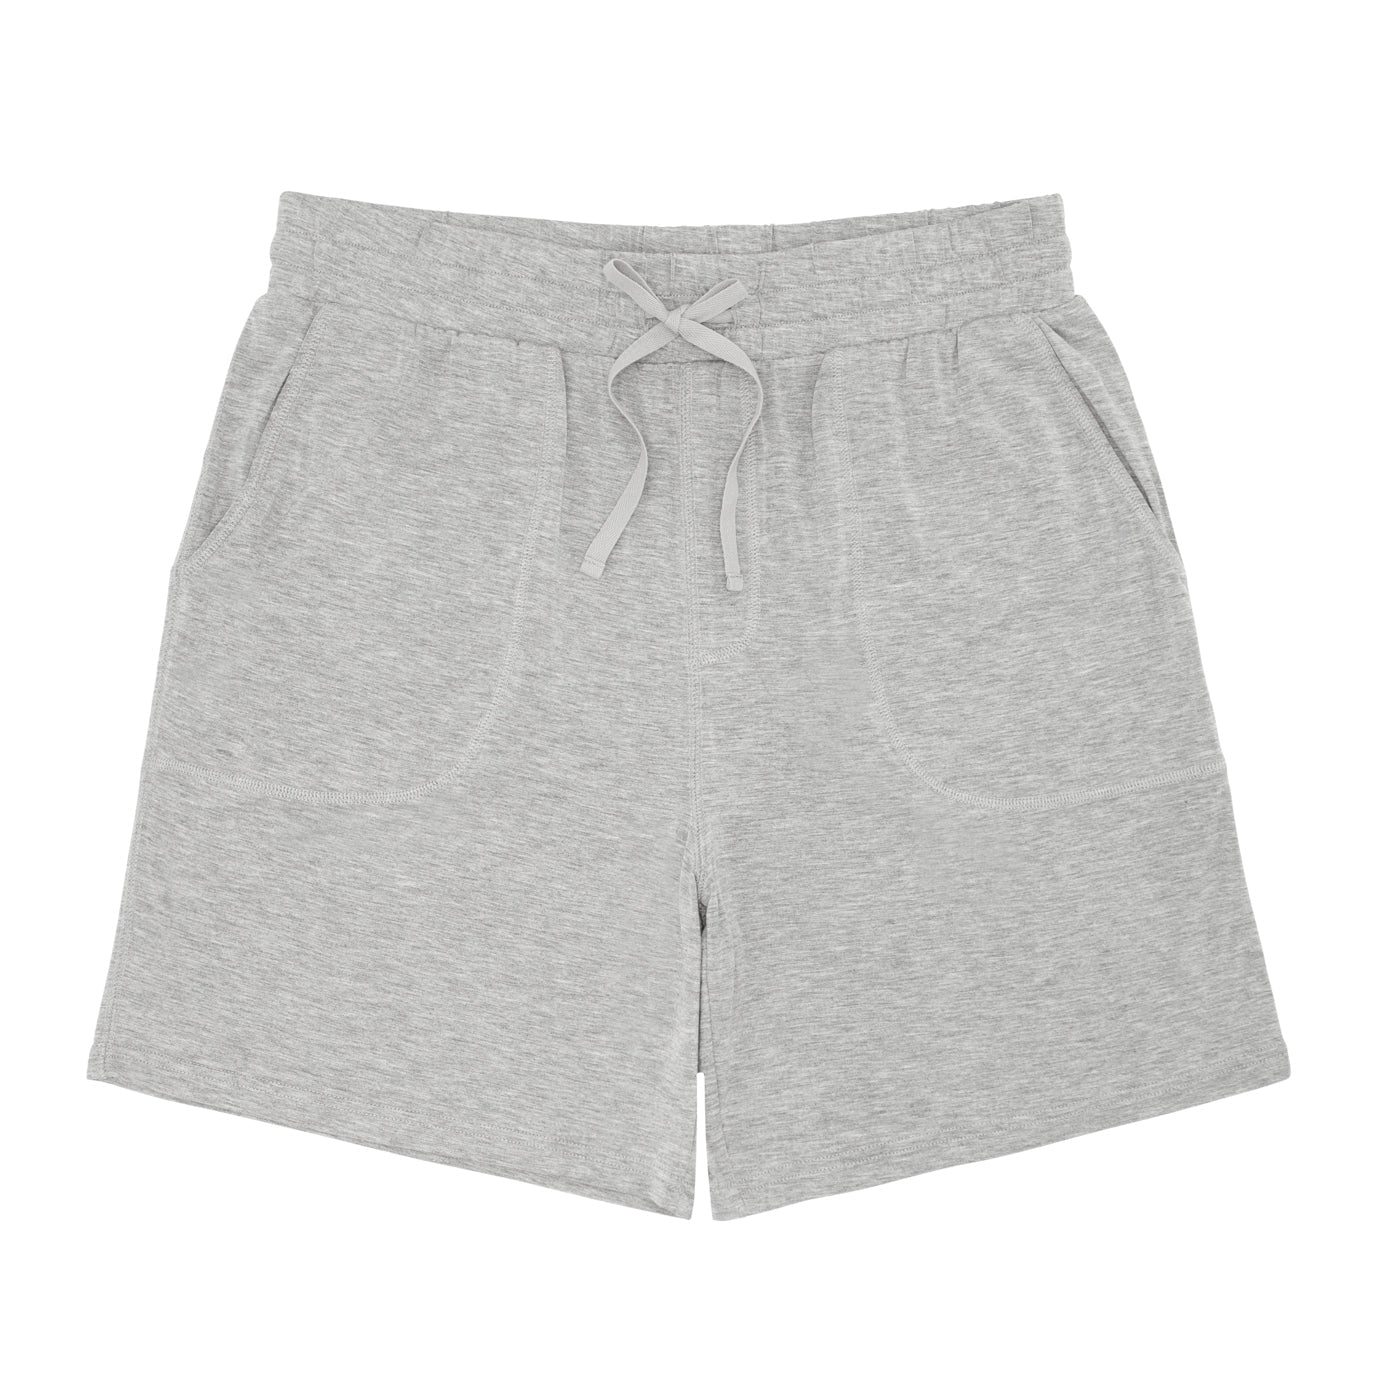 Heather Gray Men's Pajama Shorts - Little Sleepies